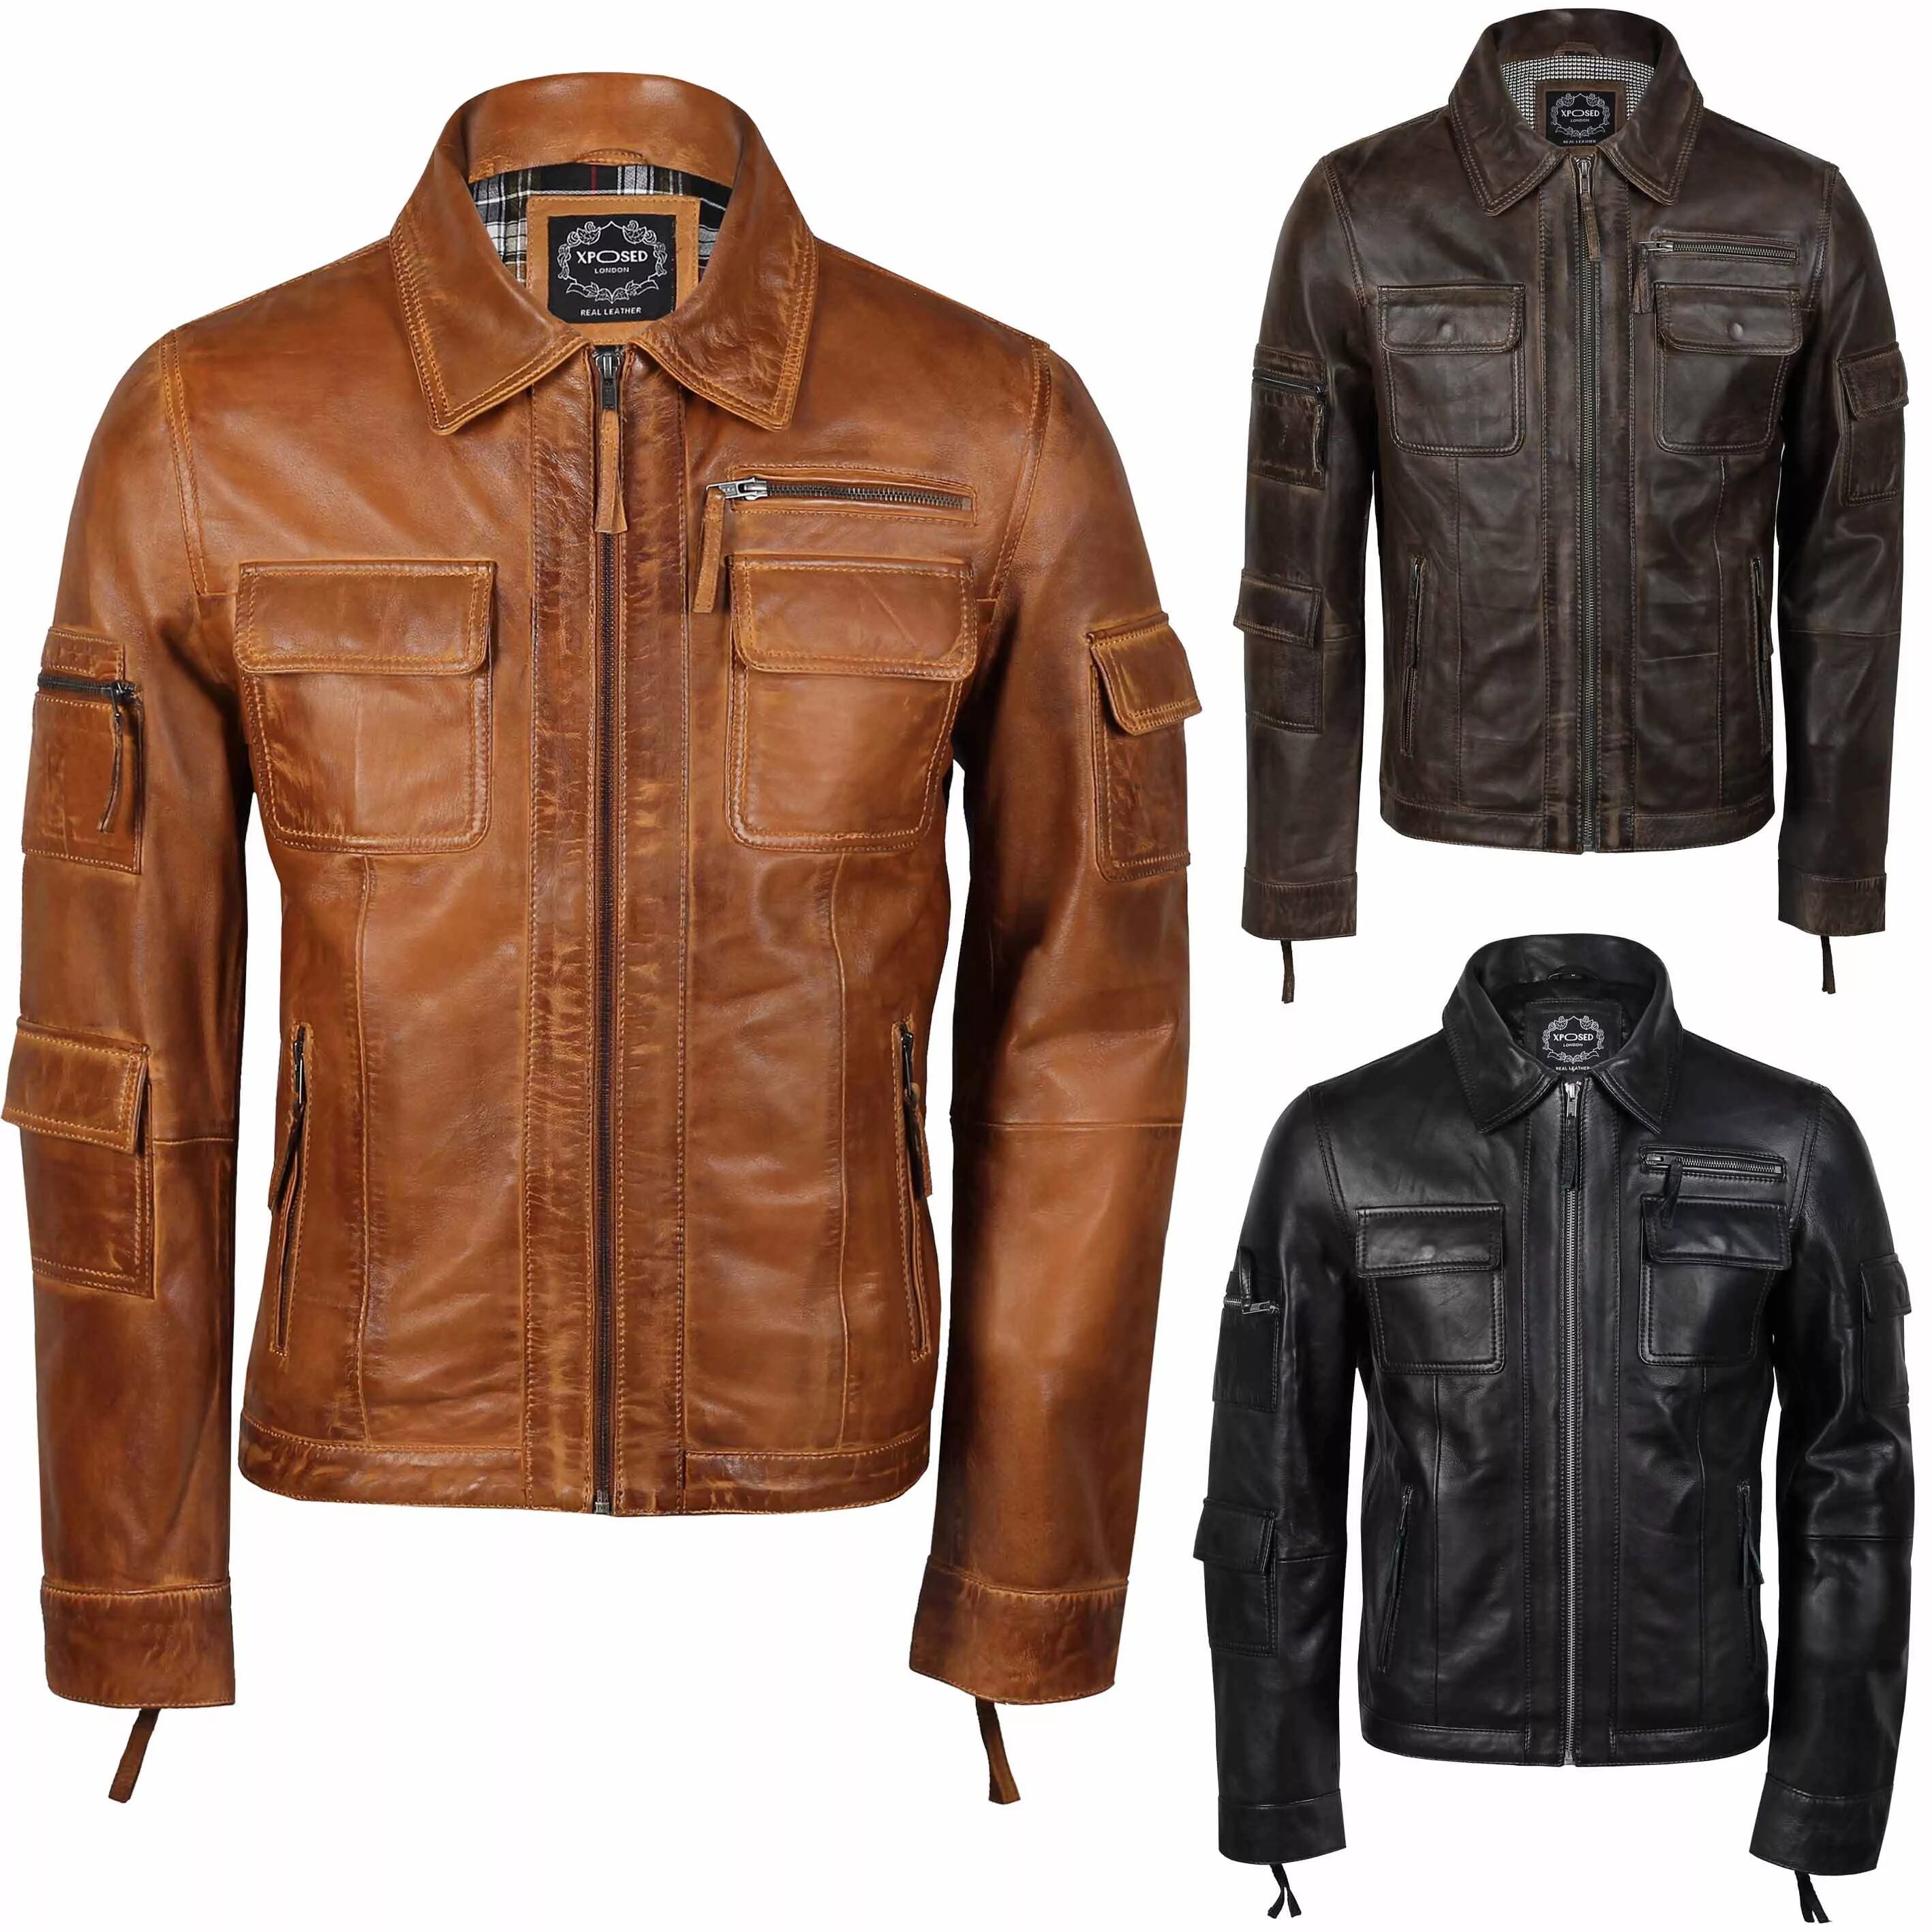 Мужская кожаная куртка тула. Кожаная куртка мужская Wilsons Leather real Leather. Байкерская куртка est 35 Redwood Aviation Team real Leather. Nico real Leather бомбер мужской. Кожаная куртка ретро.